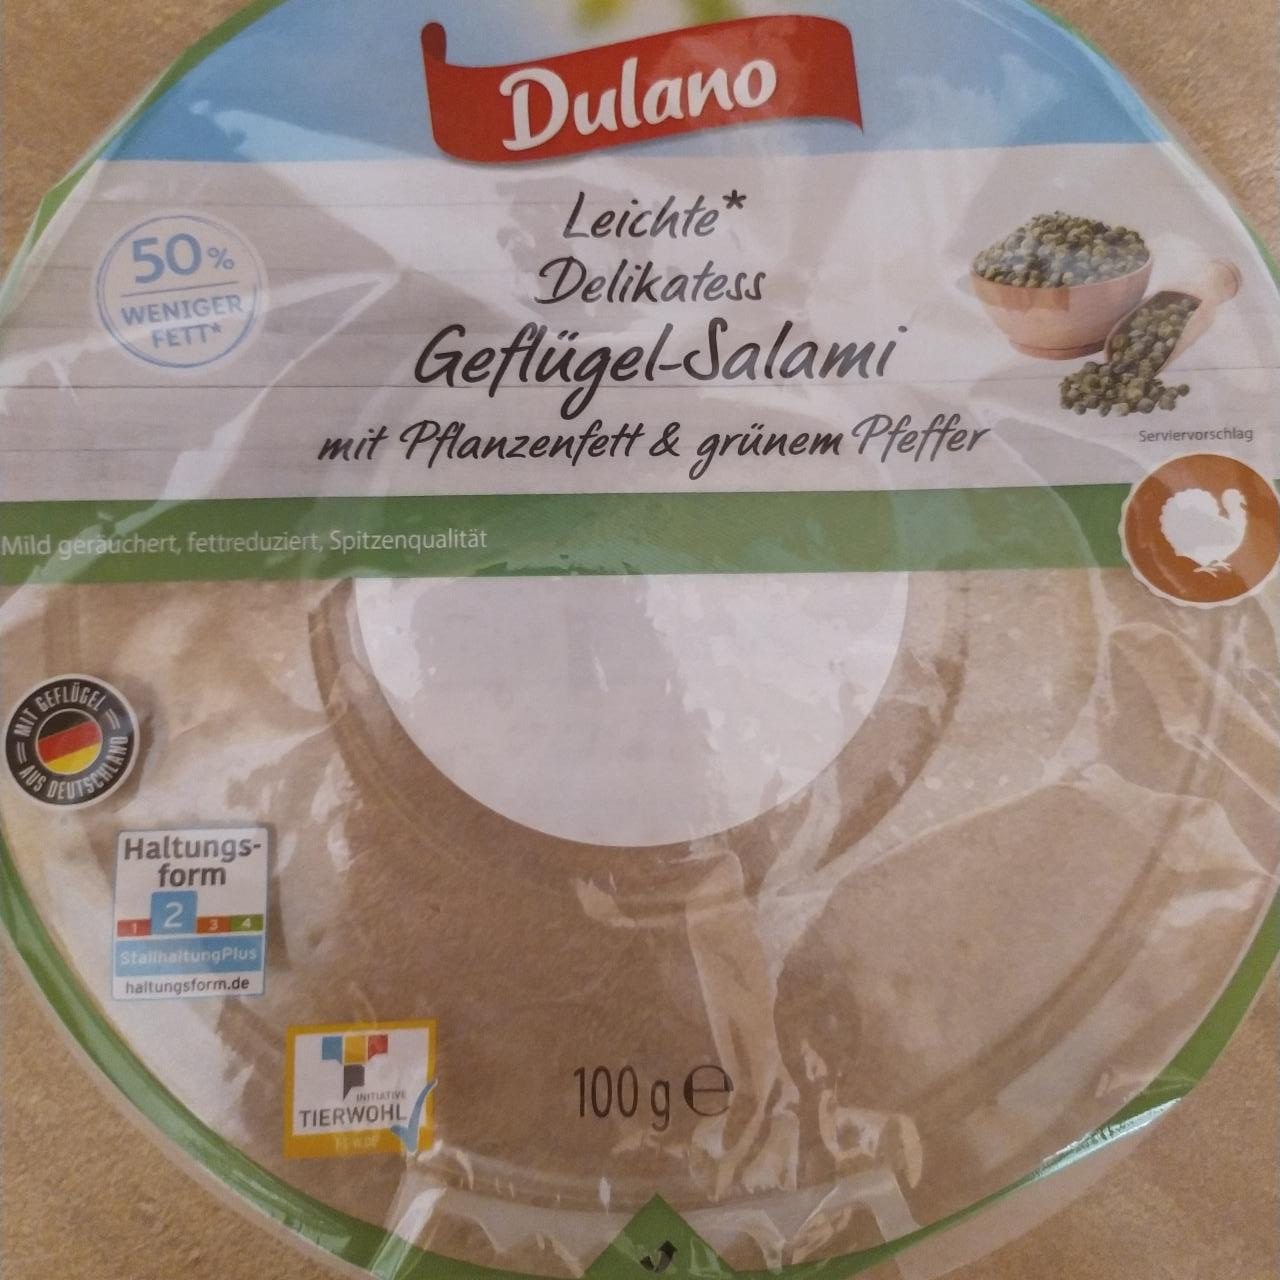 & grünen Geflügel-Salami Pflanzenfett nutriční - a Pfeffer Leichte mit Delikatess Dulano kJ hodnoty kalorie,